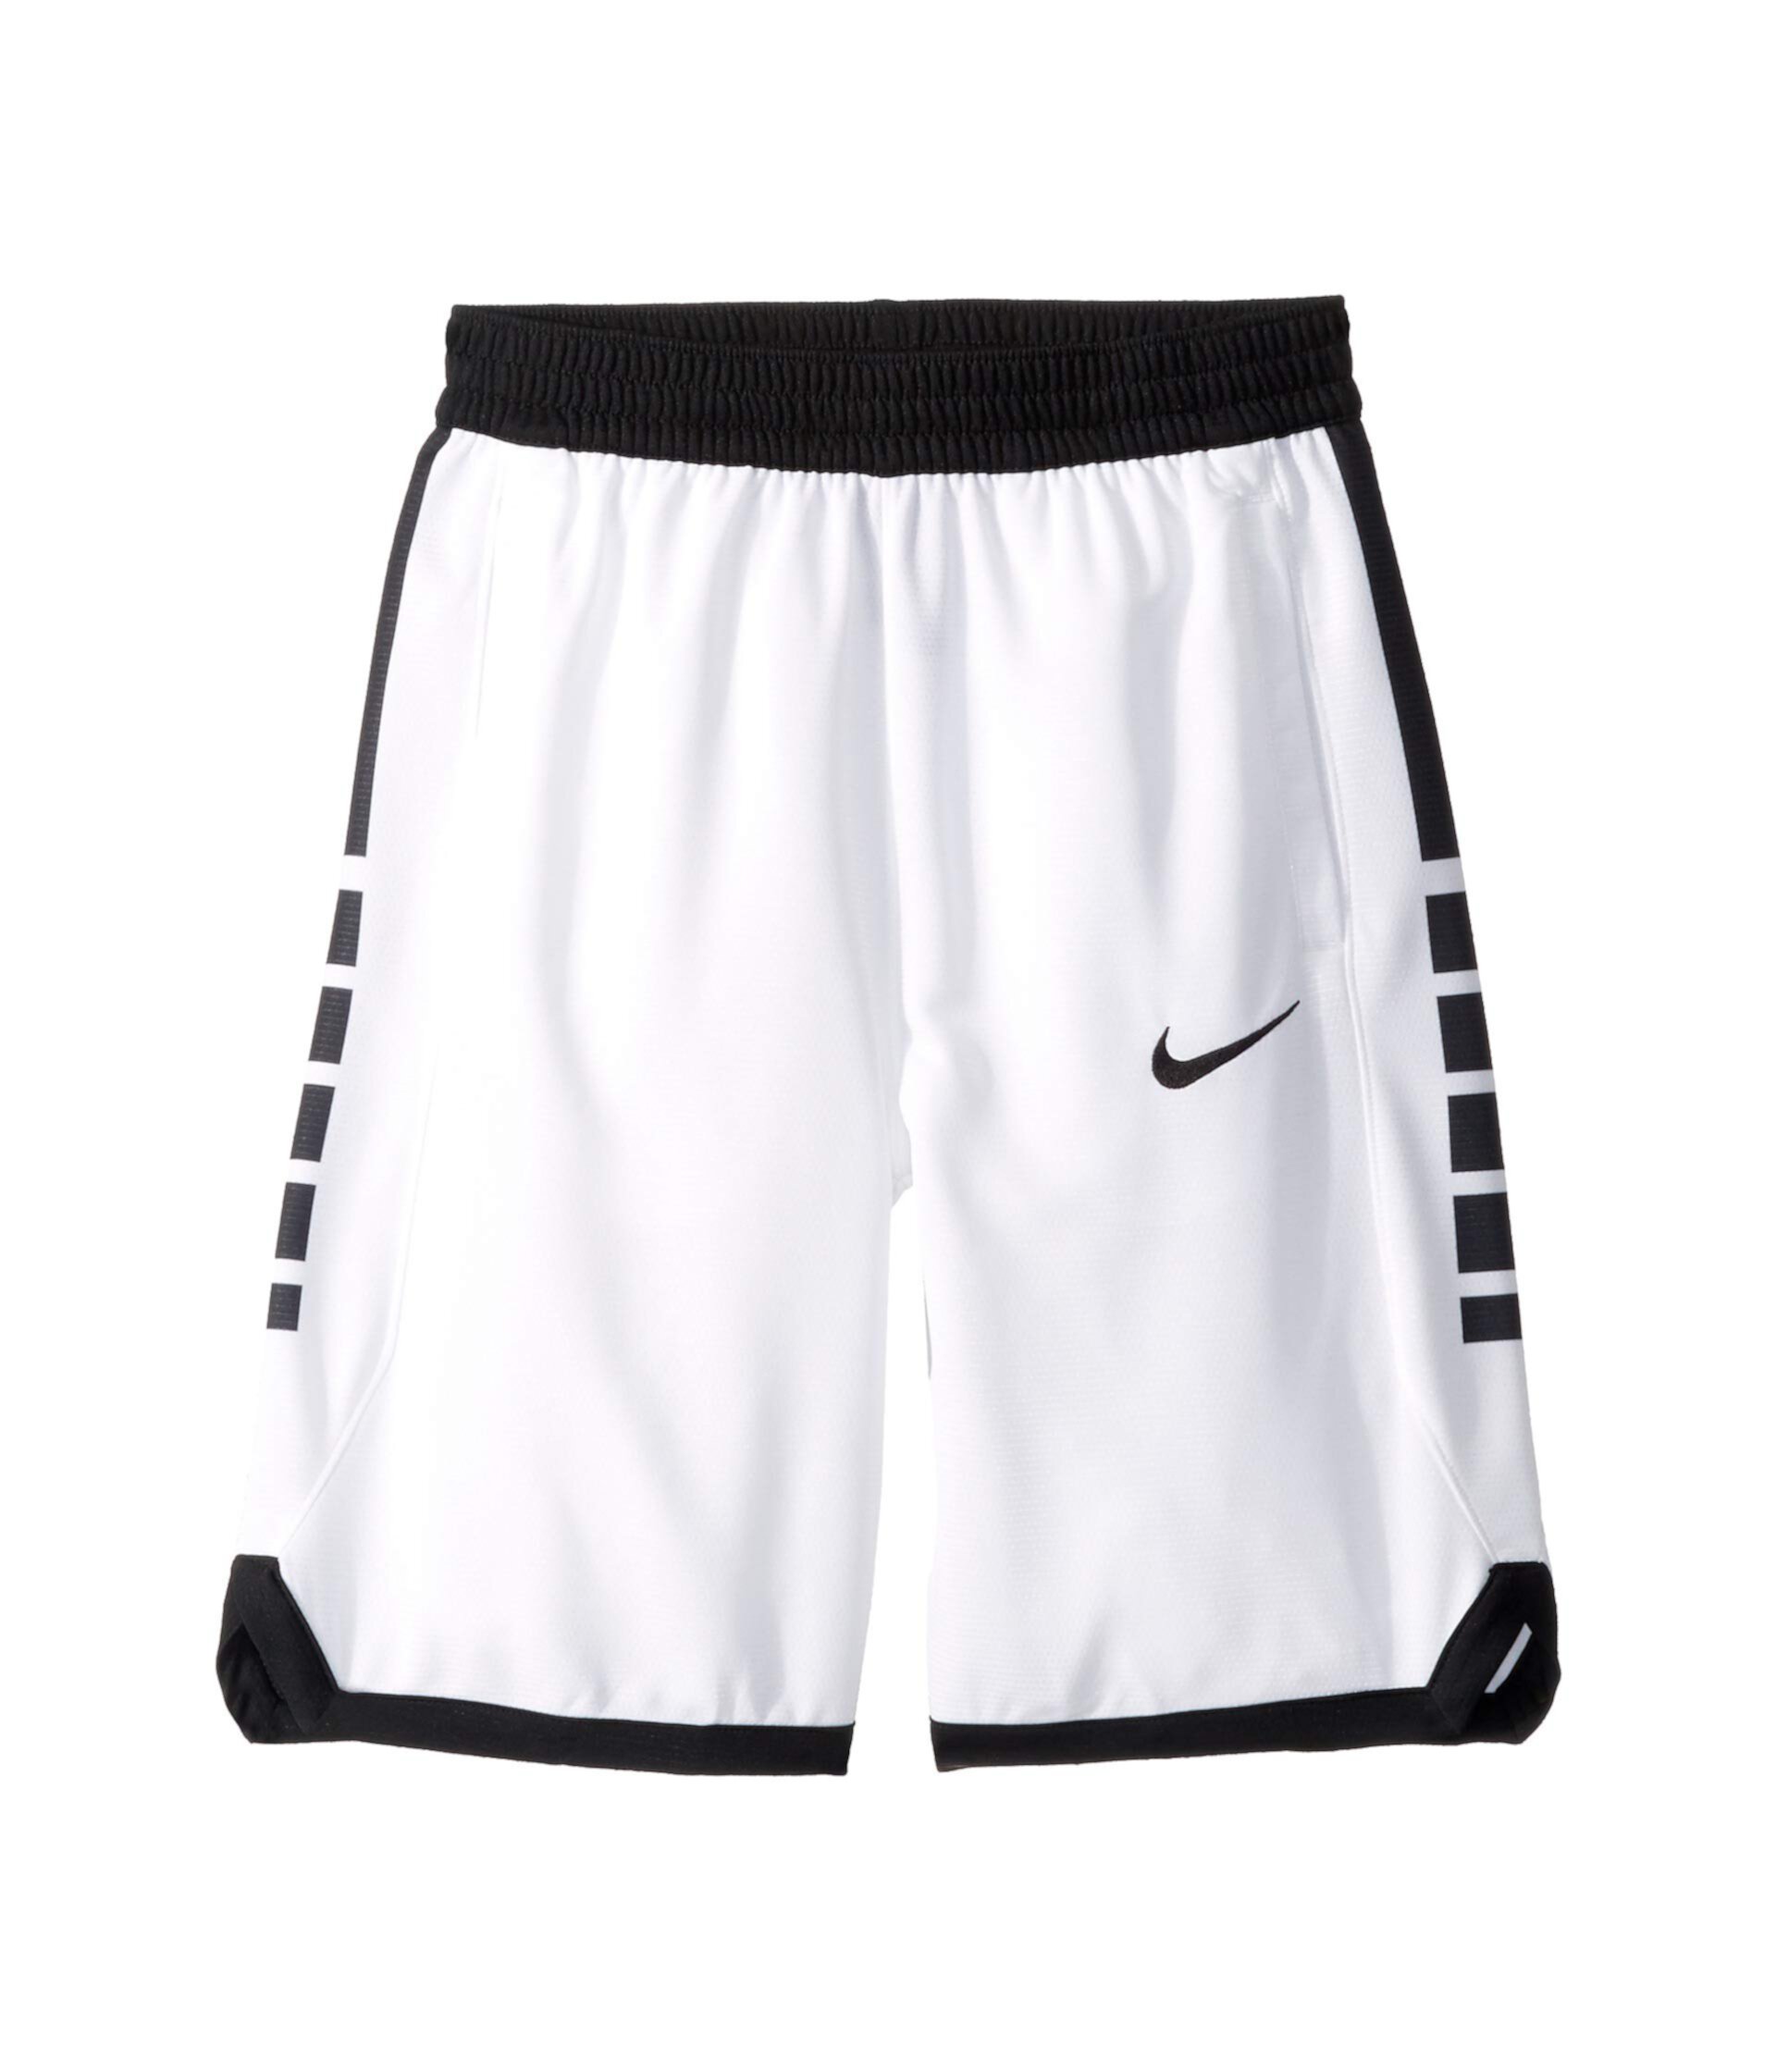 Баскетбольные шорты Dry Elite (для детей младшего и школьного возраста) Nike Kids